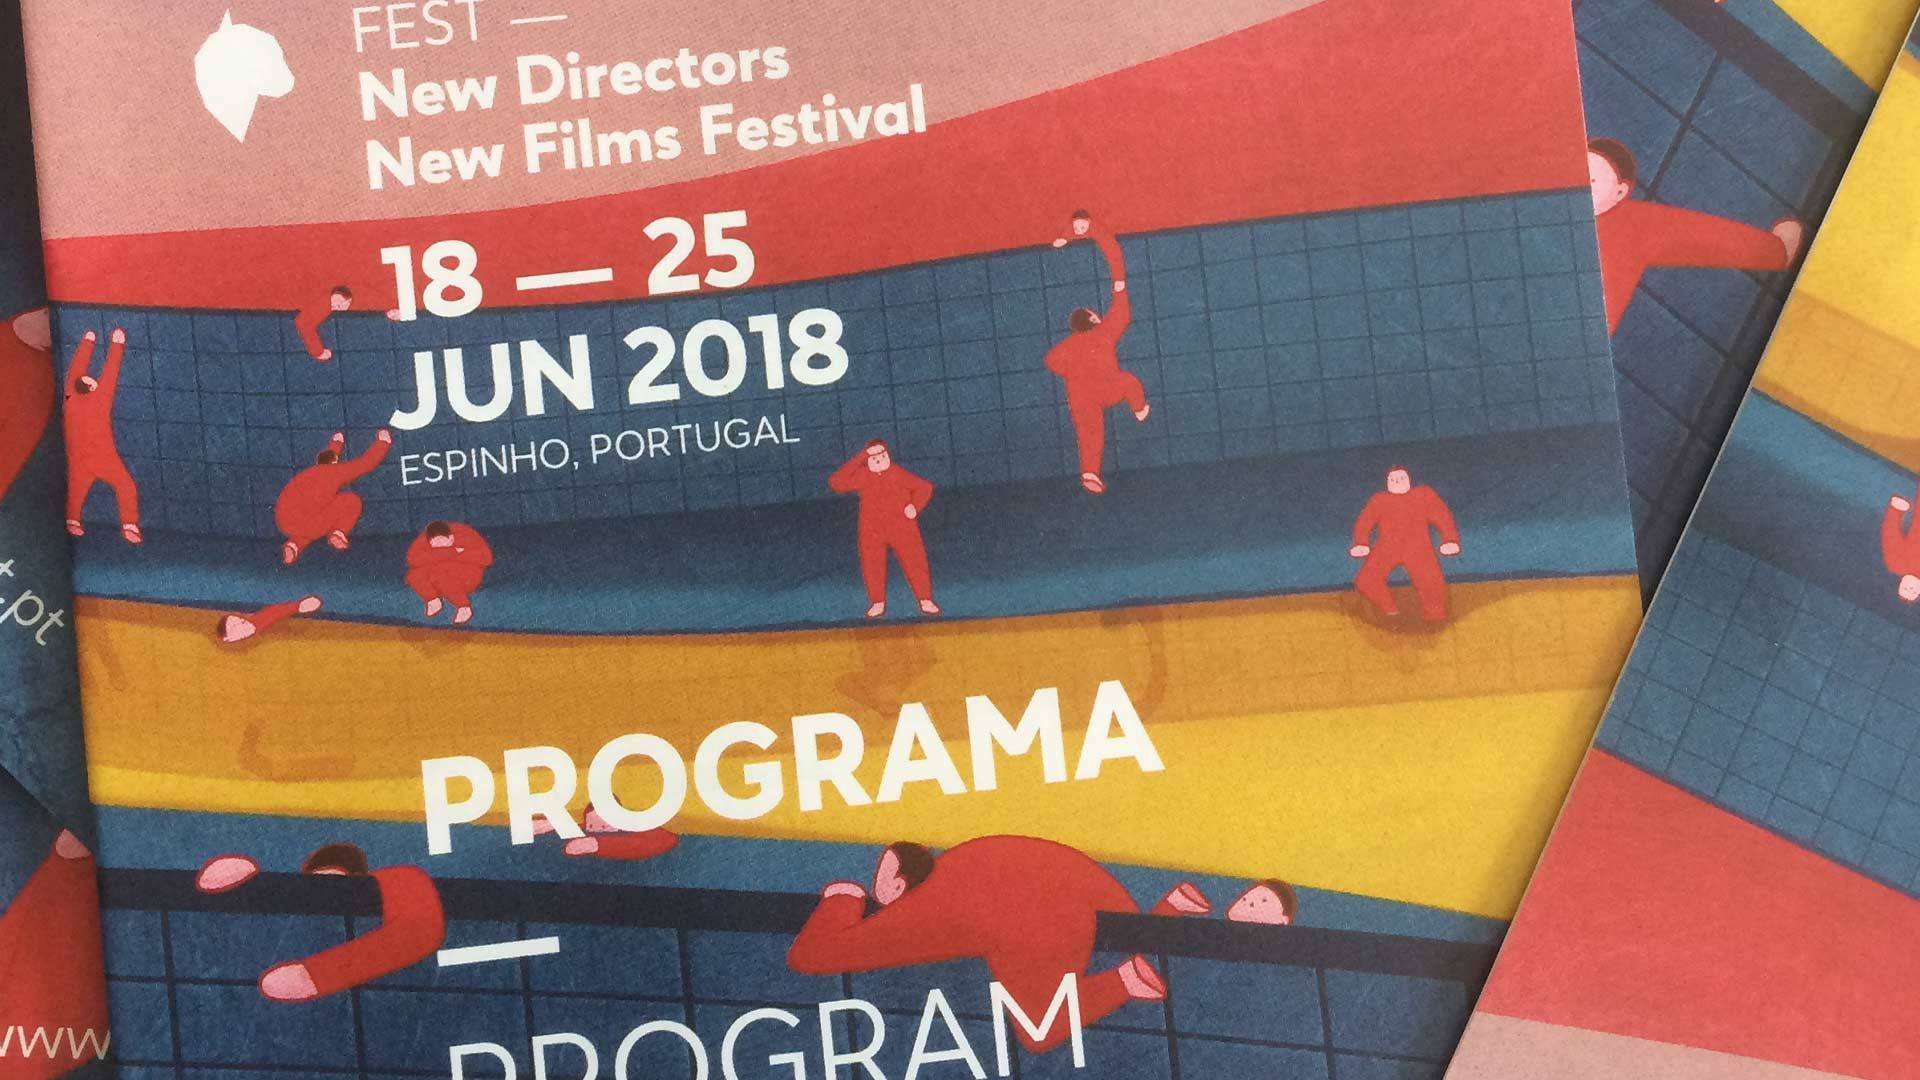 Programa de Cinema - FEST 2018 espinho.jpg